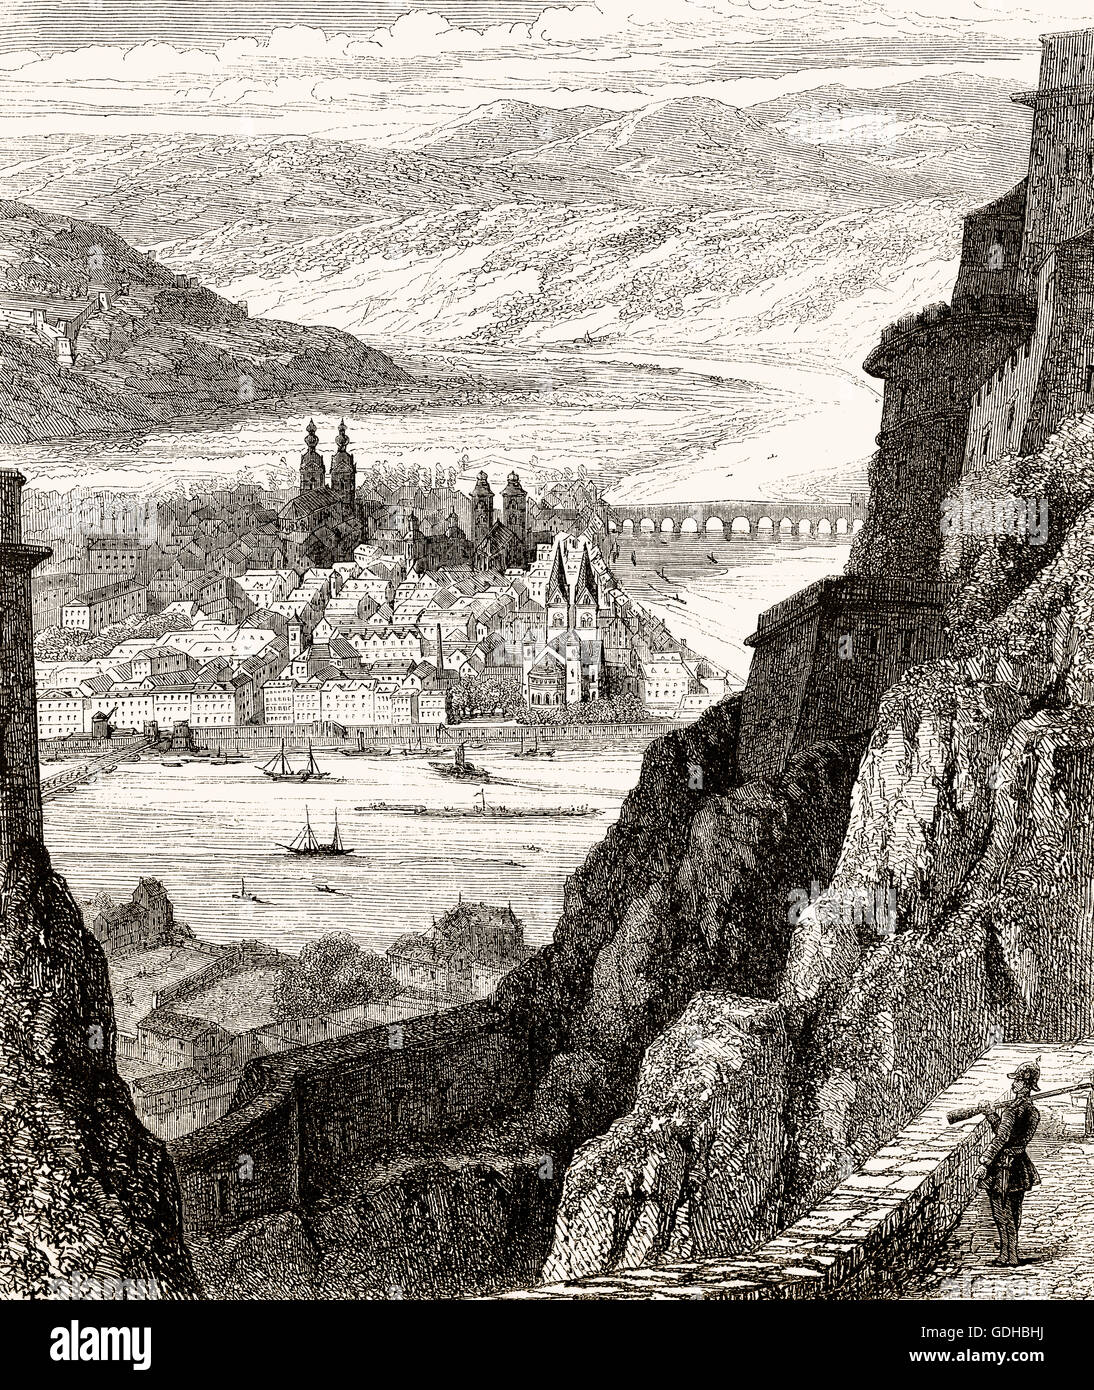 Festung Ehrenbreitstein, Koblenz, Deutschland, 19. Jahrhundert Stockfoto